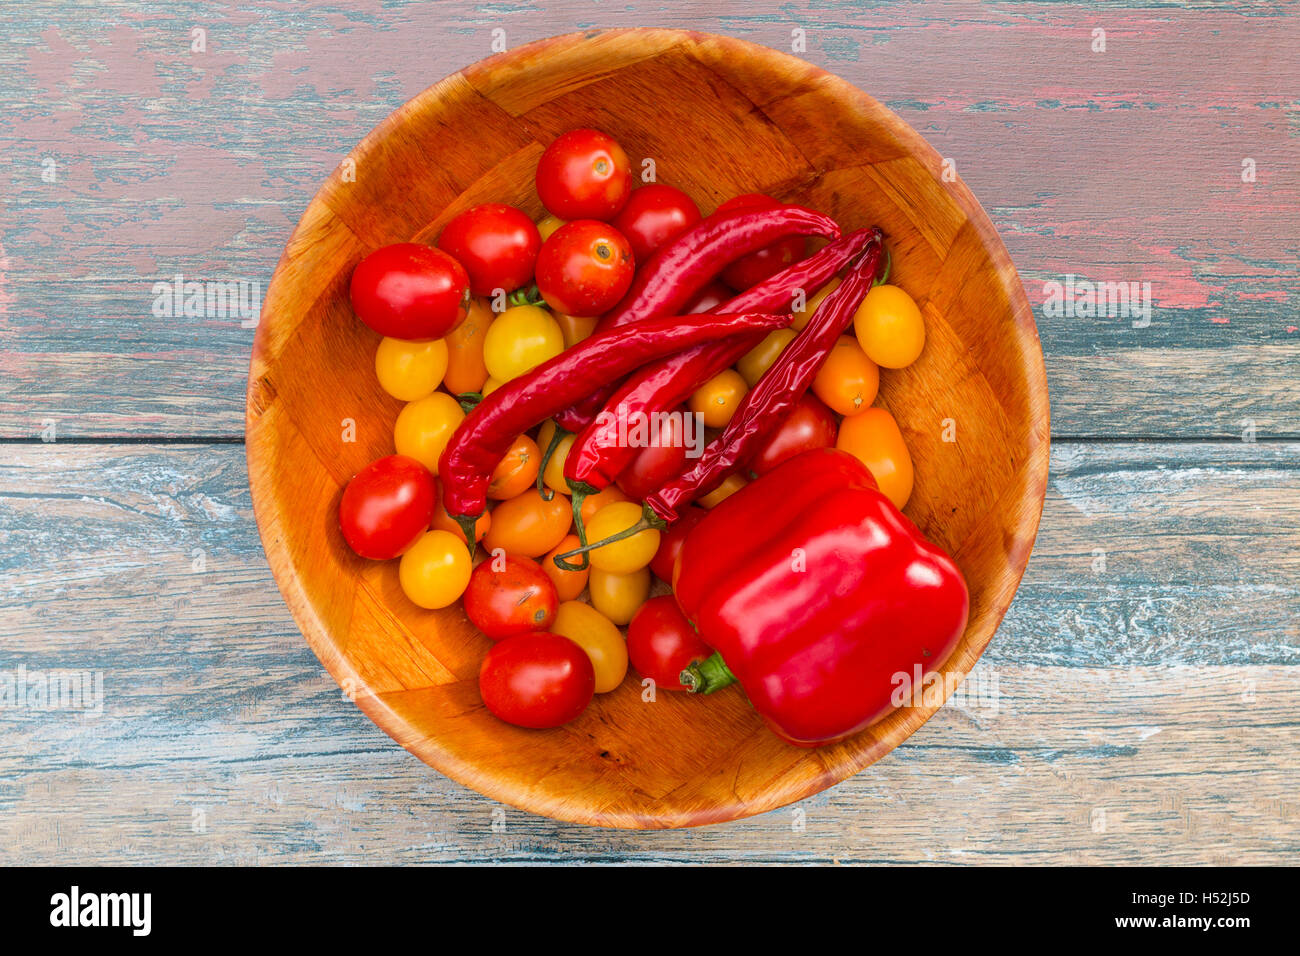 Recipiente lleno de tomate, pimentón y pimiento Foto de stock